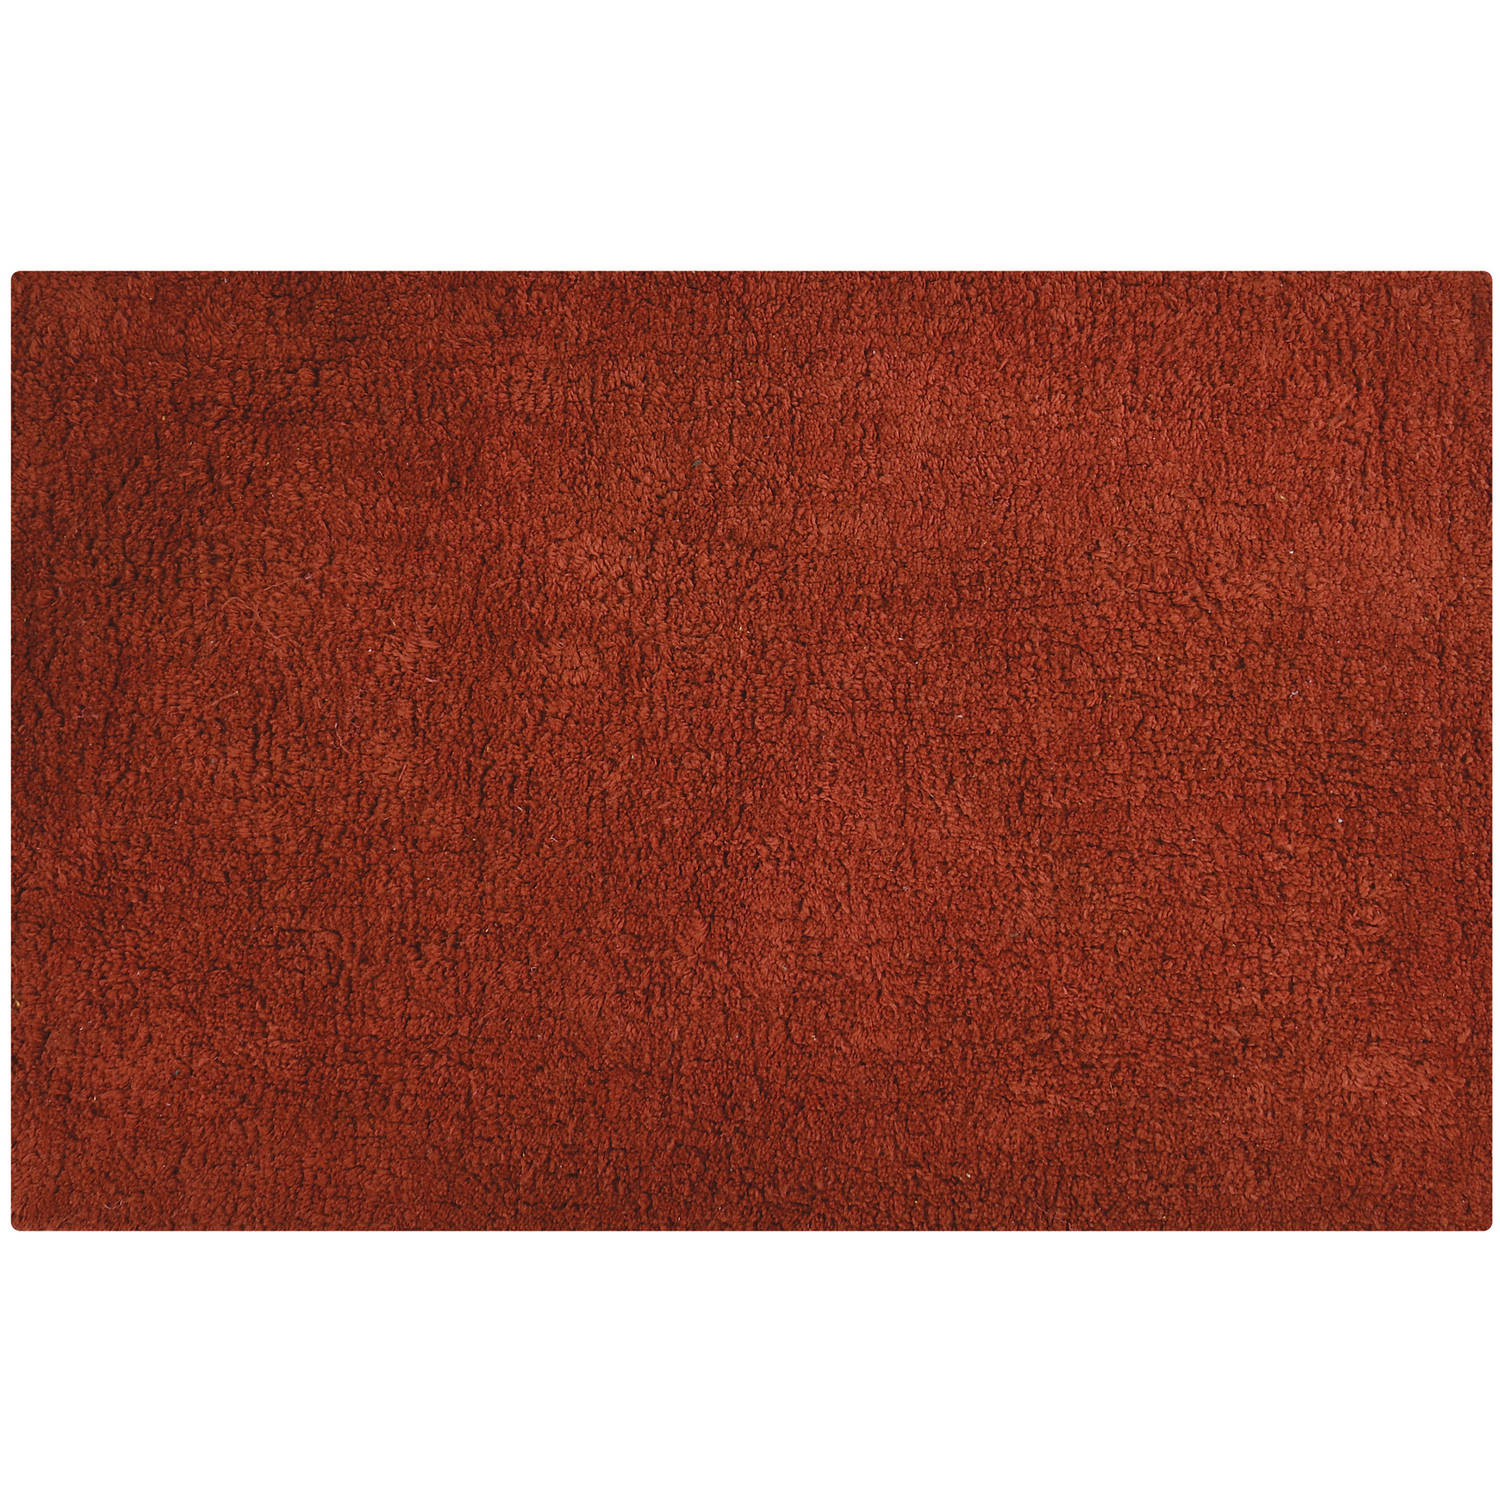 MSV Badkamerkleedje/badmat tapijtje - voor op de vloer - terracotta - 45 x 70 cm - polyester/katoen